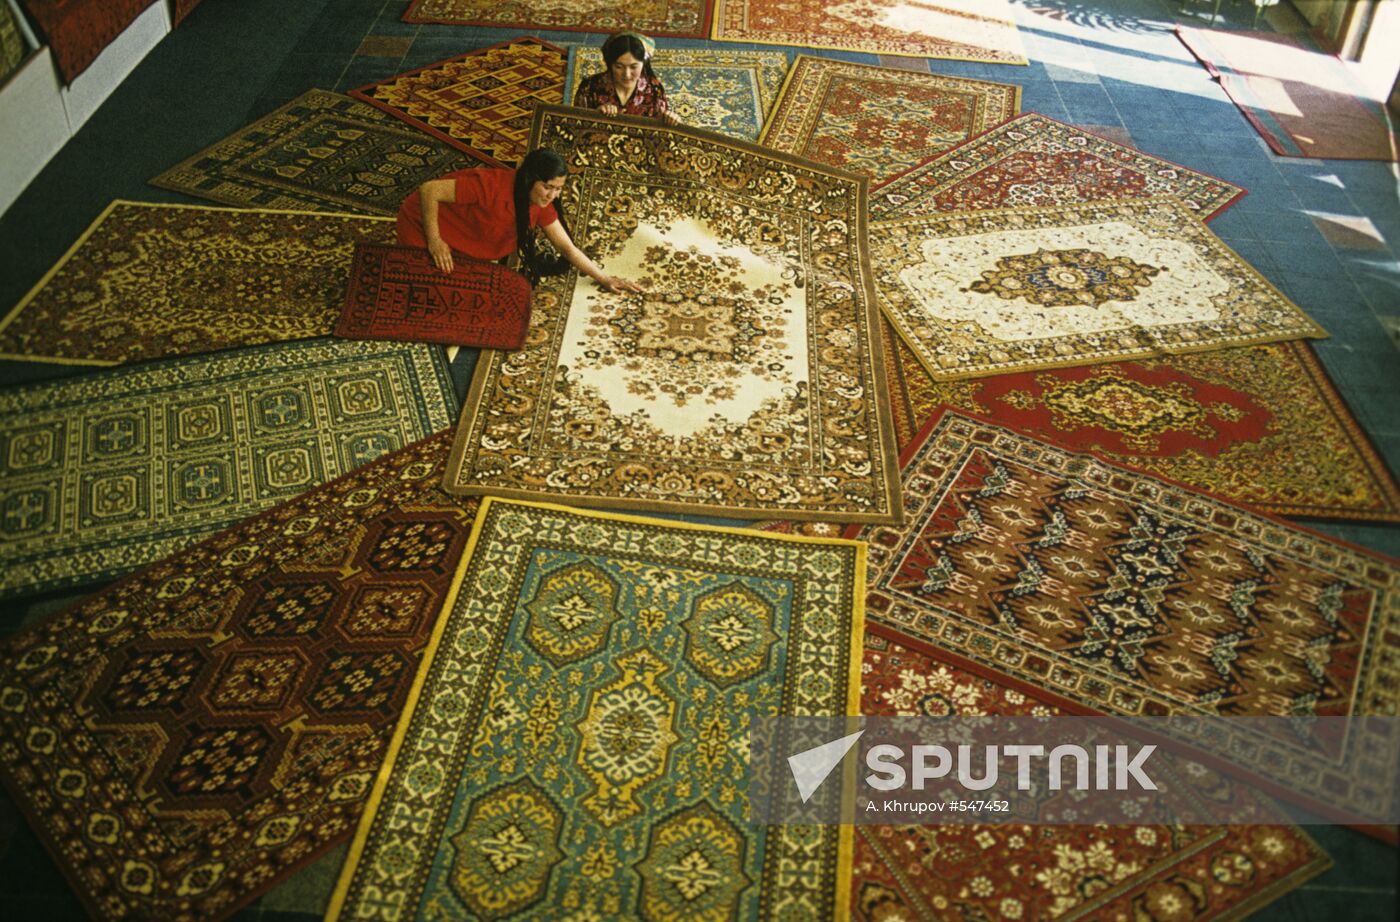 Tajik carpets